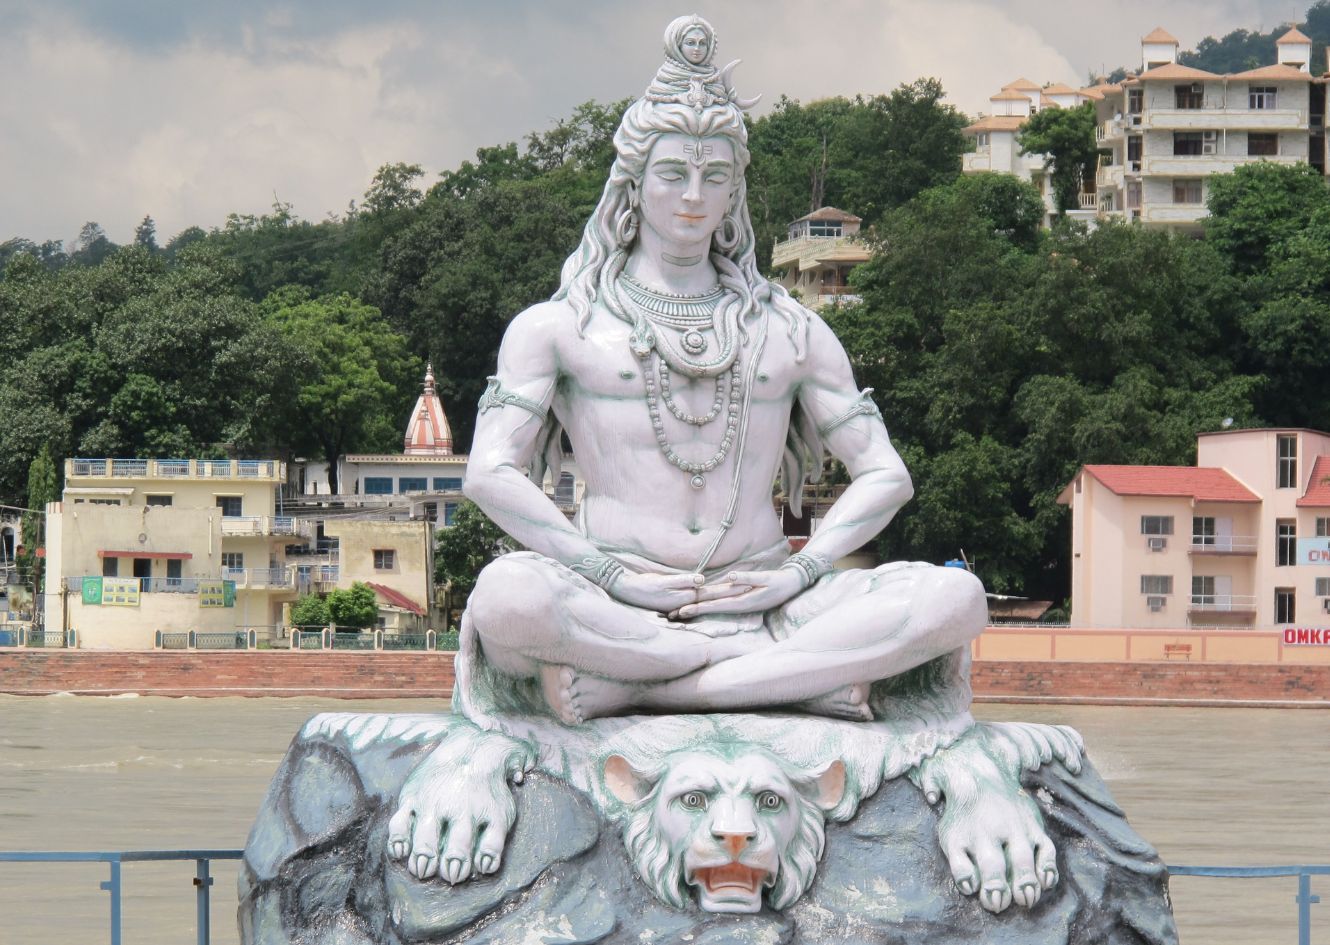 The Shiva Purana